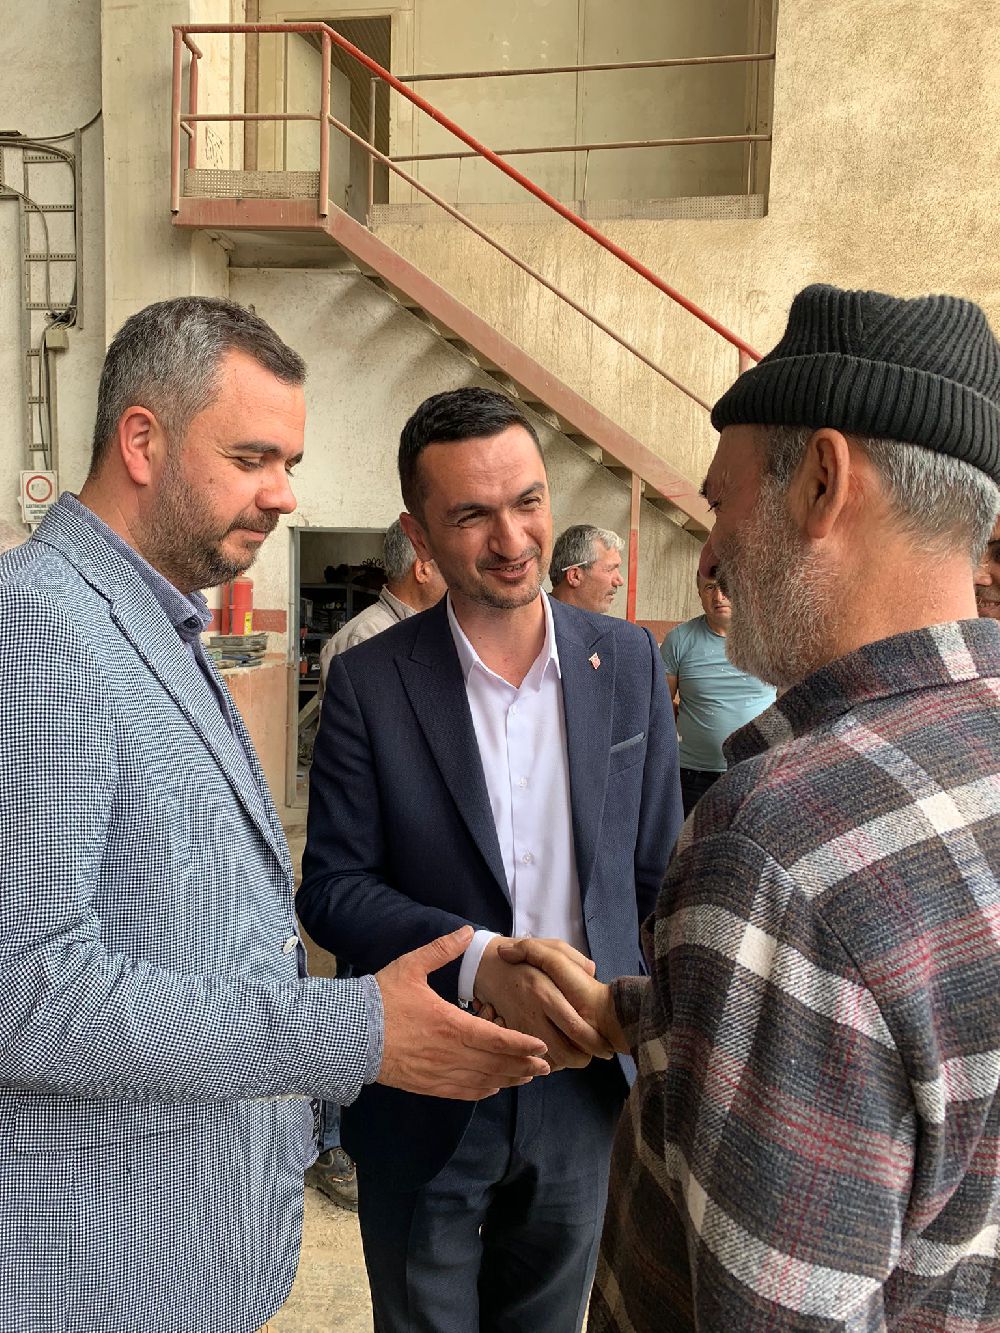 Mustafa Oğuz'dan Bucak'ta AS Çimento ziyareti